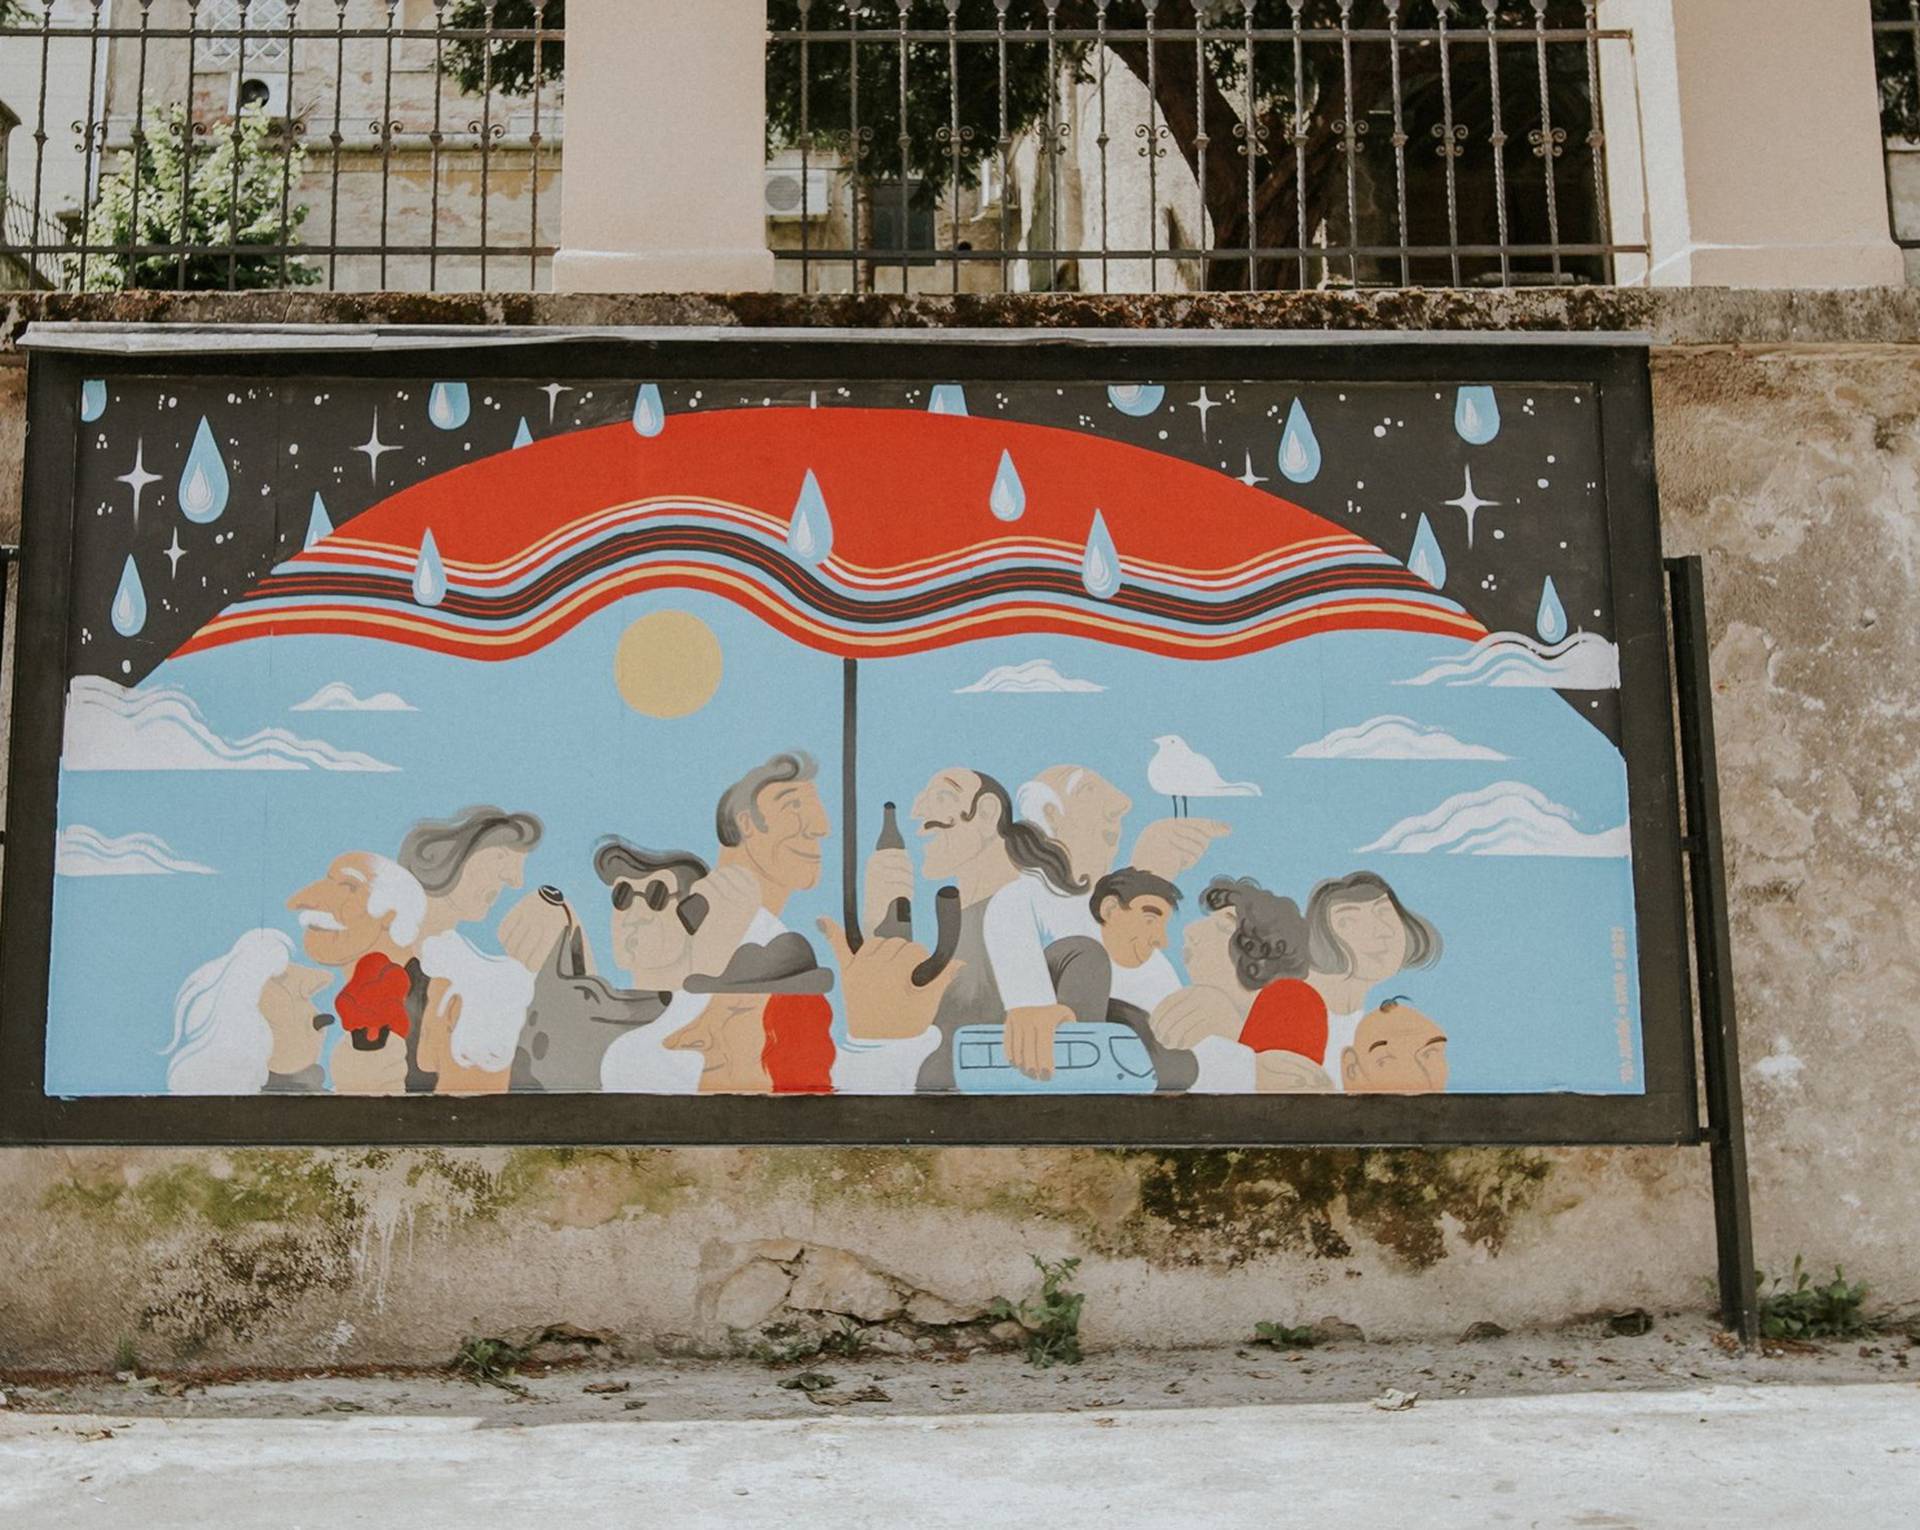 Tri talentirane dame potpisuju nove street art radove u Zagrebu